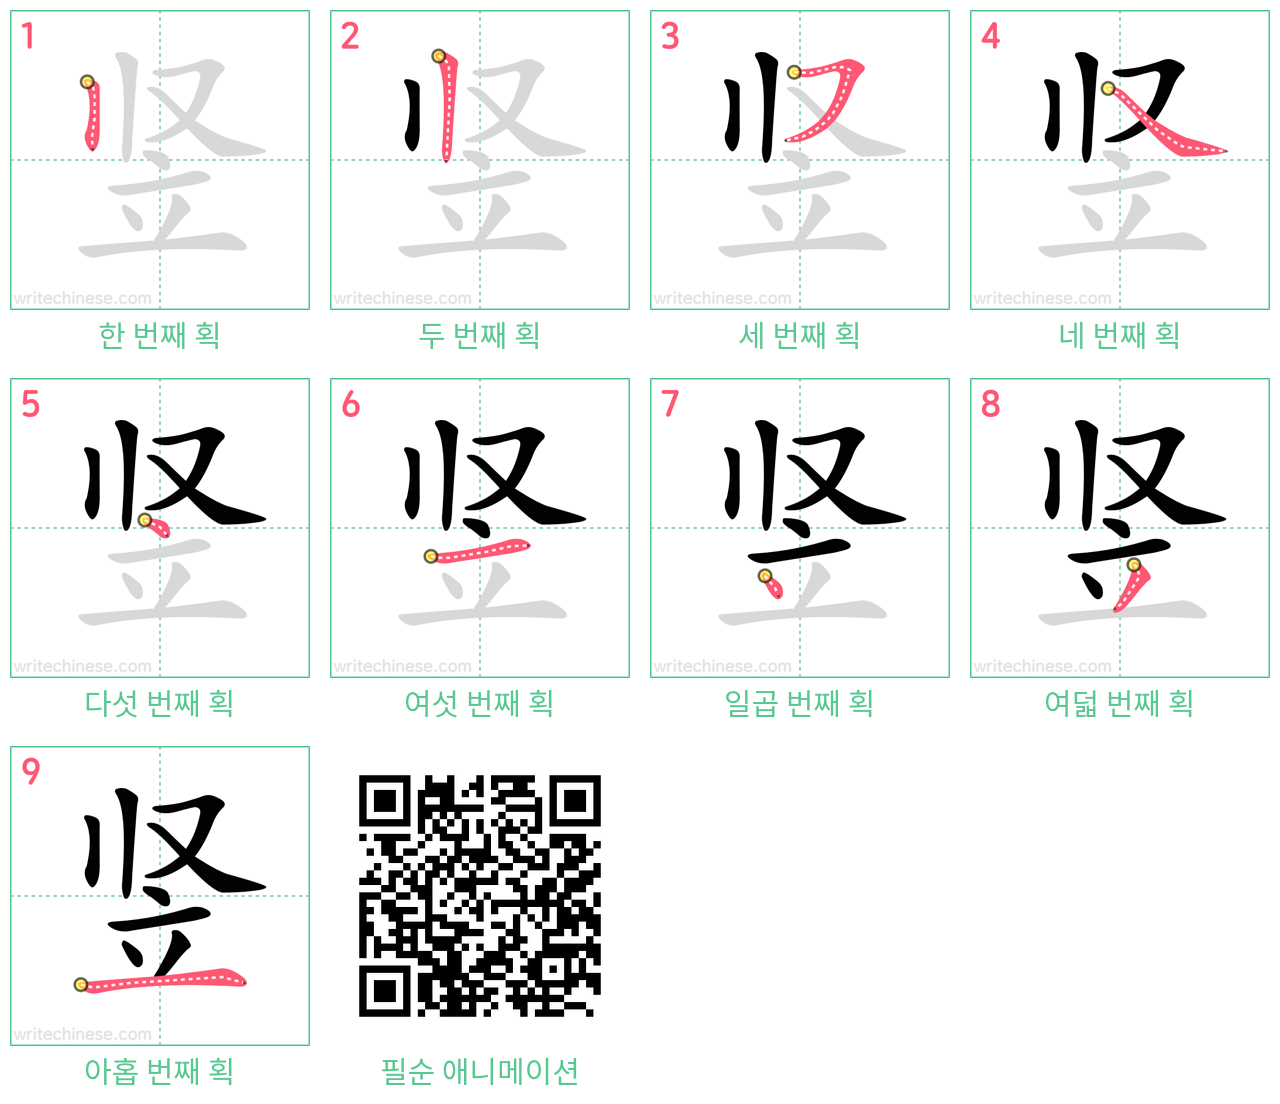 竖 step-by-step stroke order diagrams